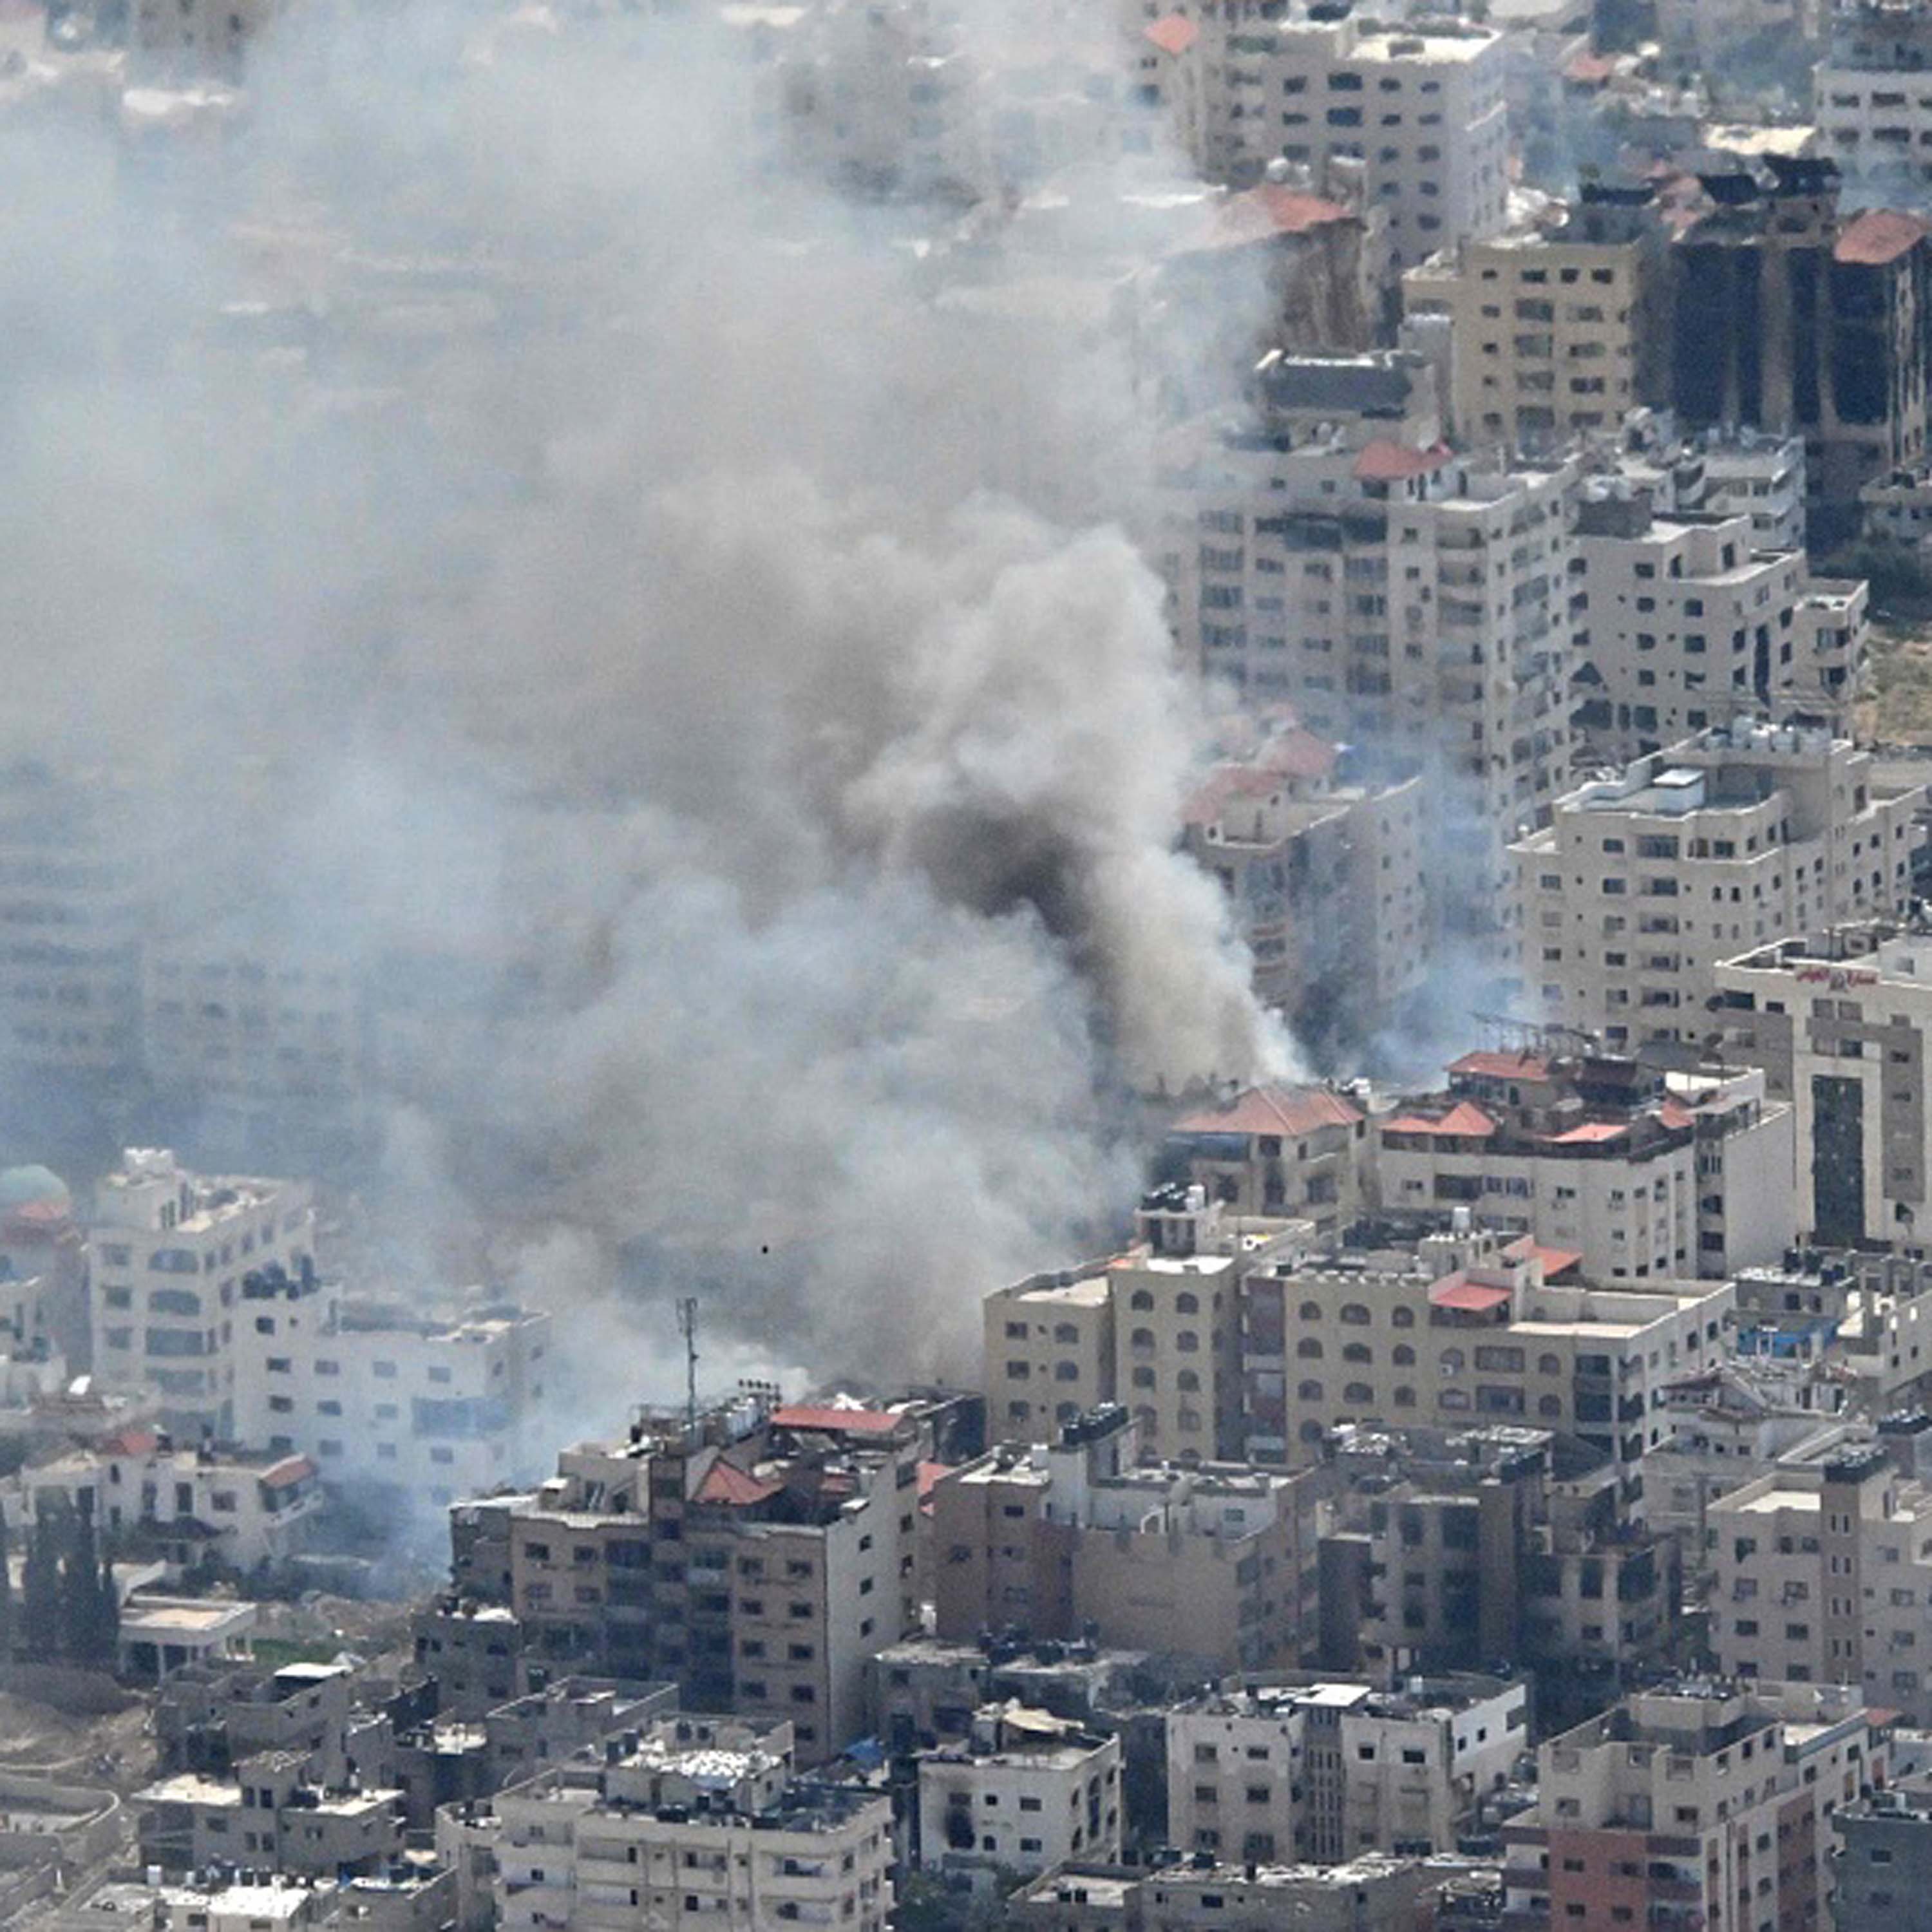 Efforts underway as international community seeks peace in Gaza